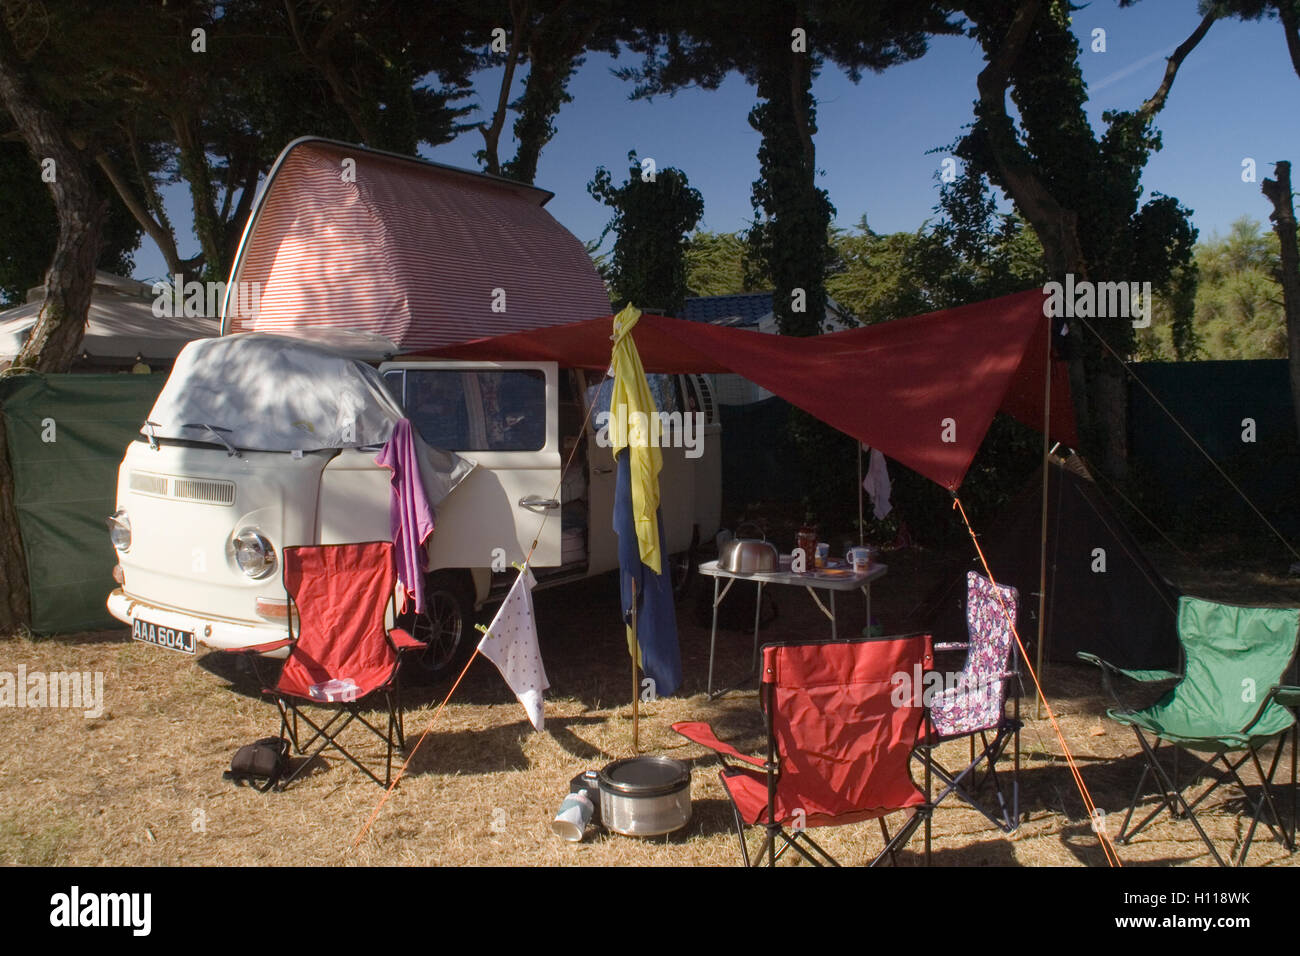 Camping at Les Portes-en-Ré Stock Photo